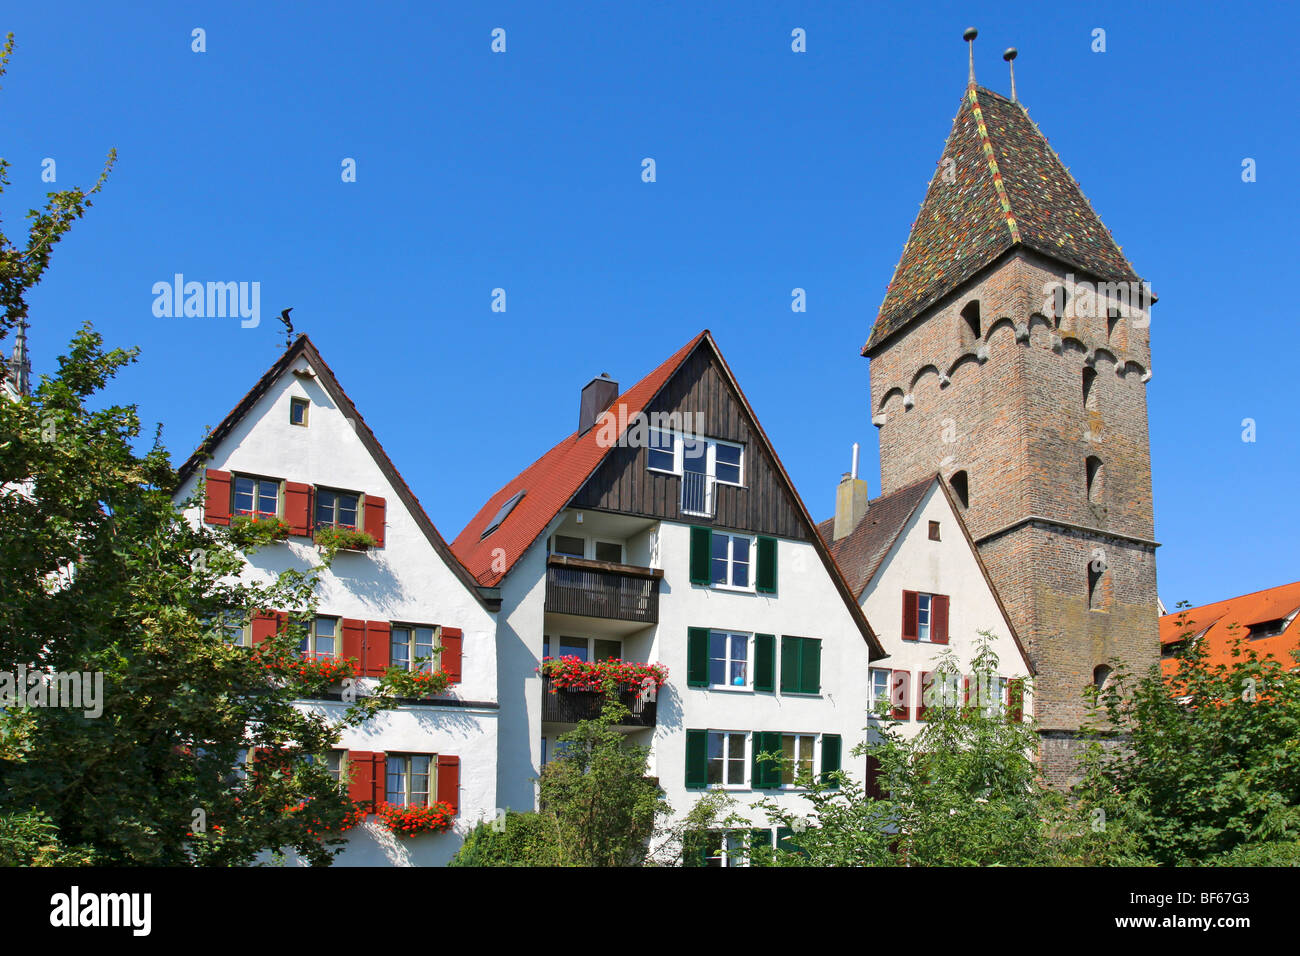 Deutschland, Germany der schiefe Turm von Ulm, Butcher's Tower Stock Photo